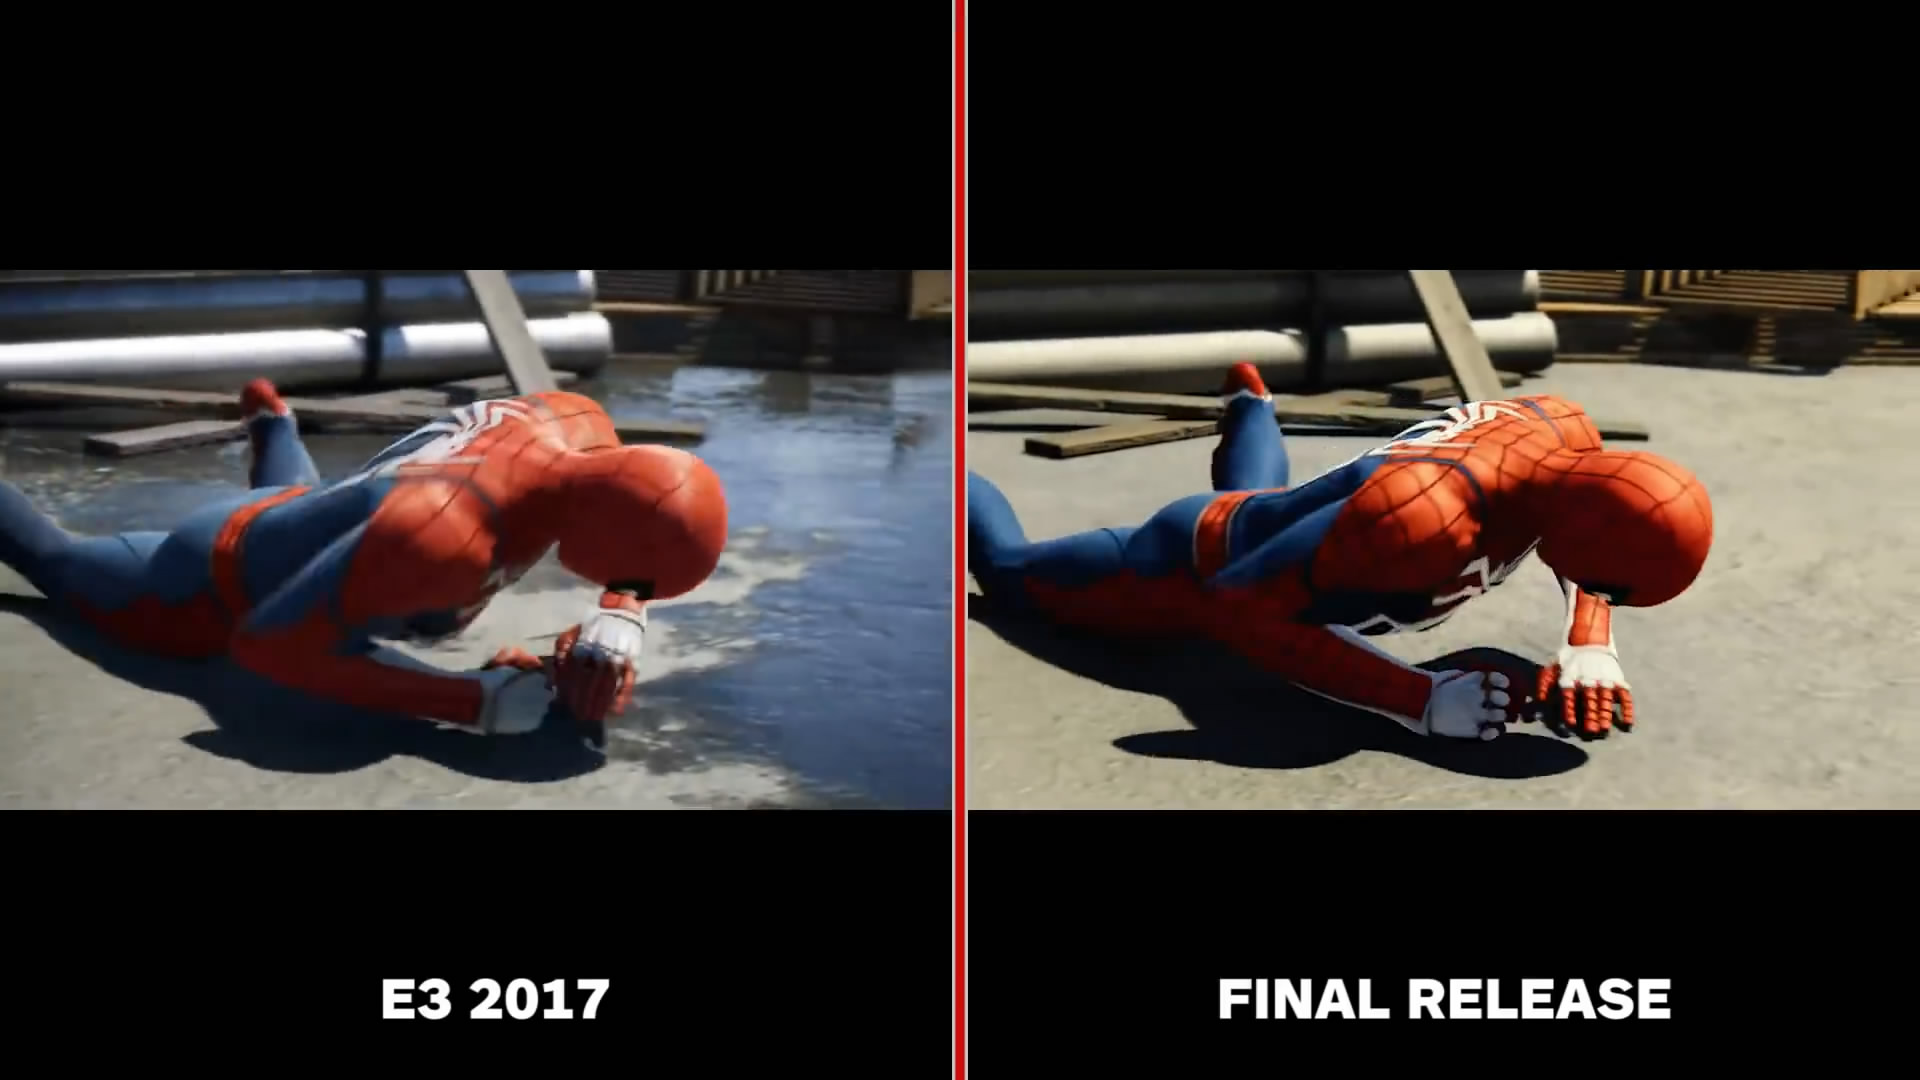 《蜘蛛侠》E3版与正式版对比视频 画质缩水还是提升了?